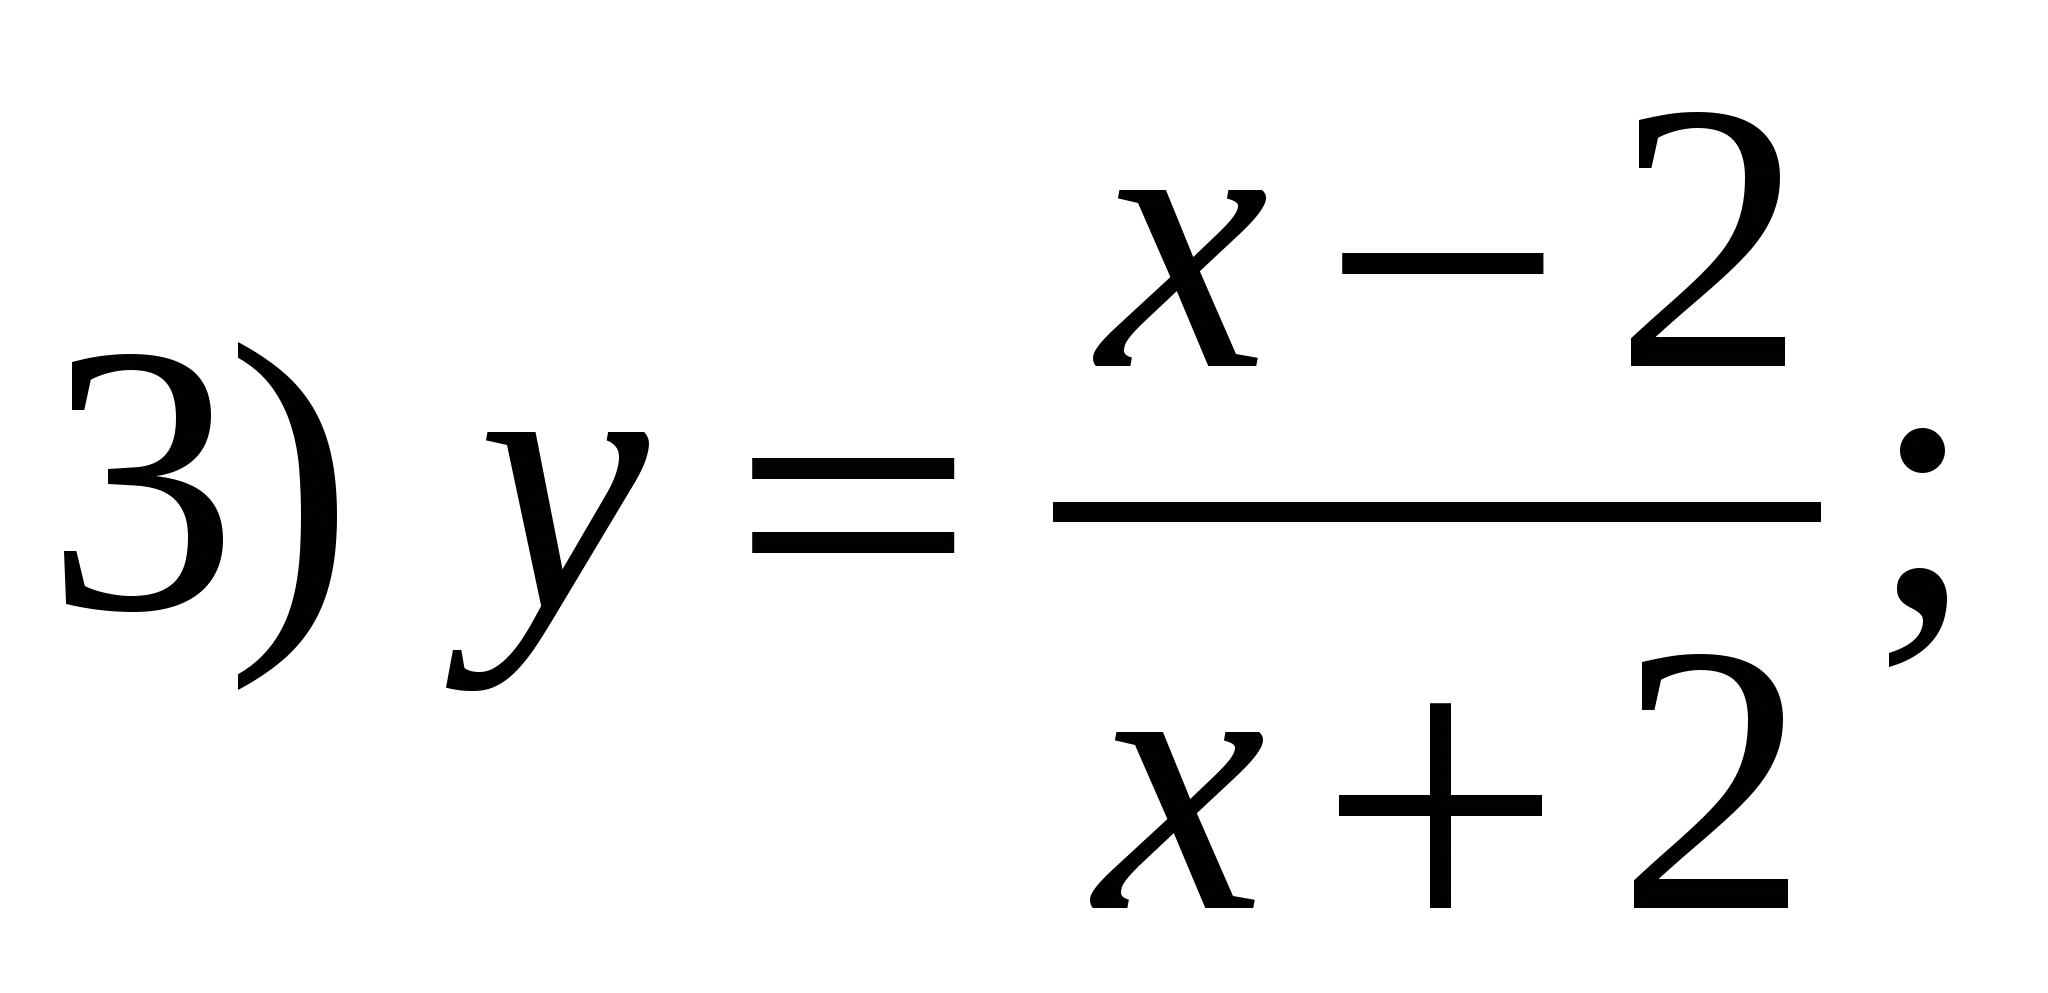 Урок по алгебре на темуПростейшие преобразования графиков функций